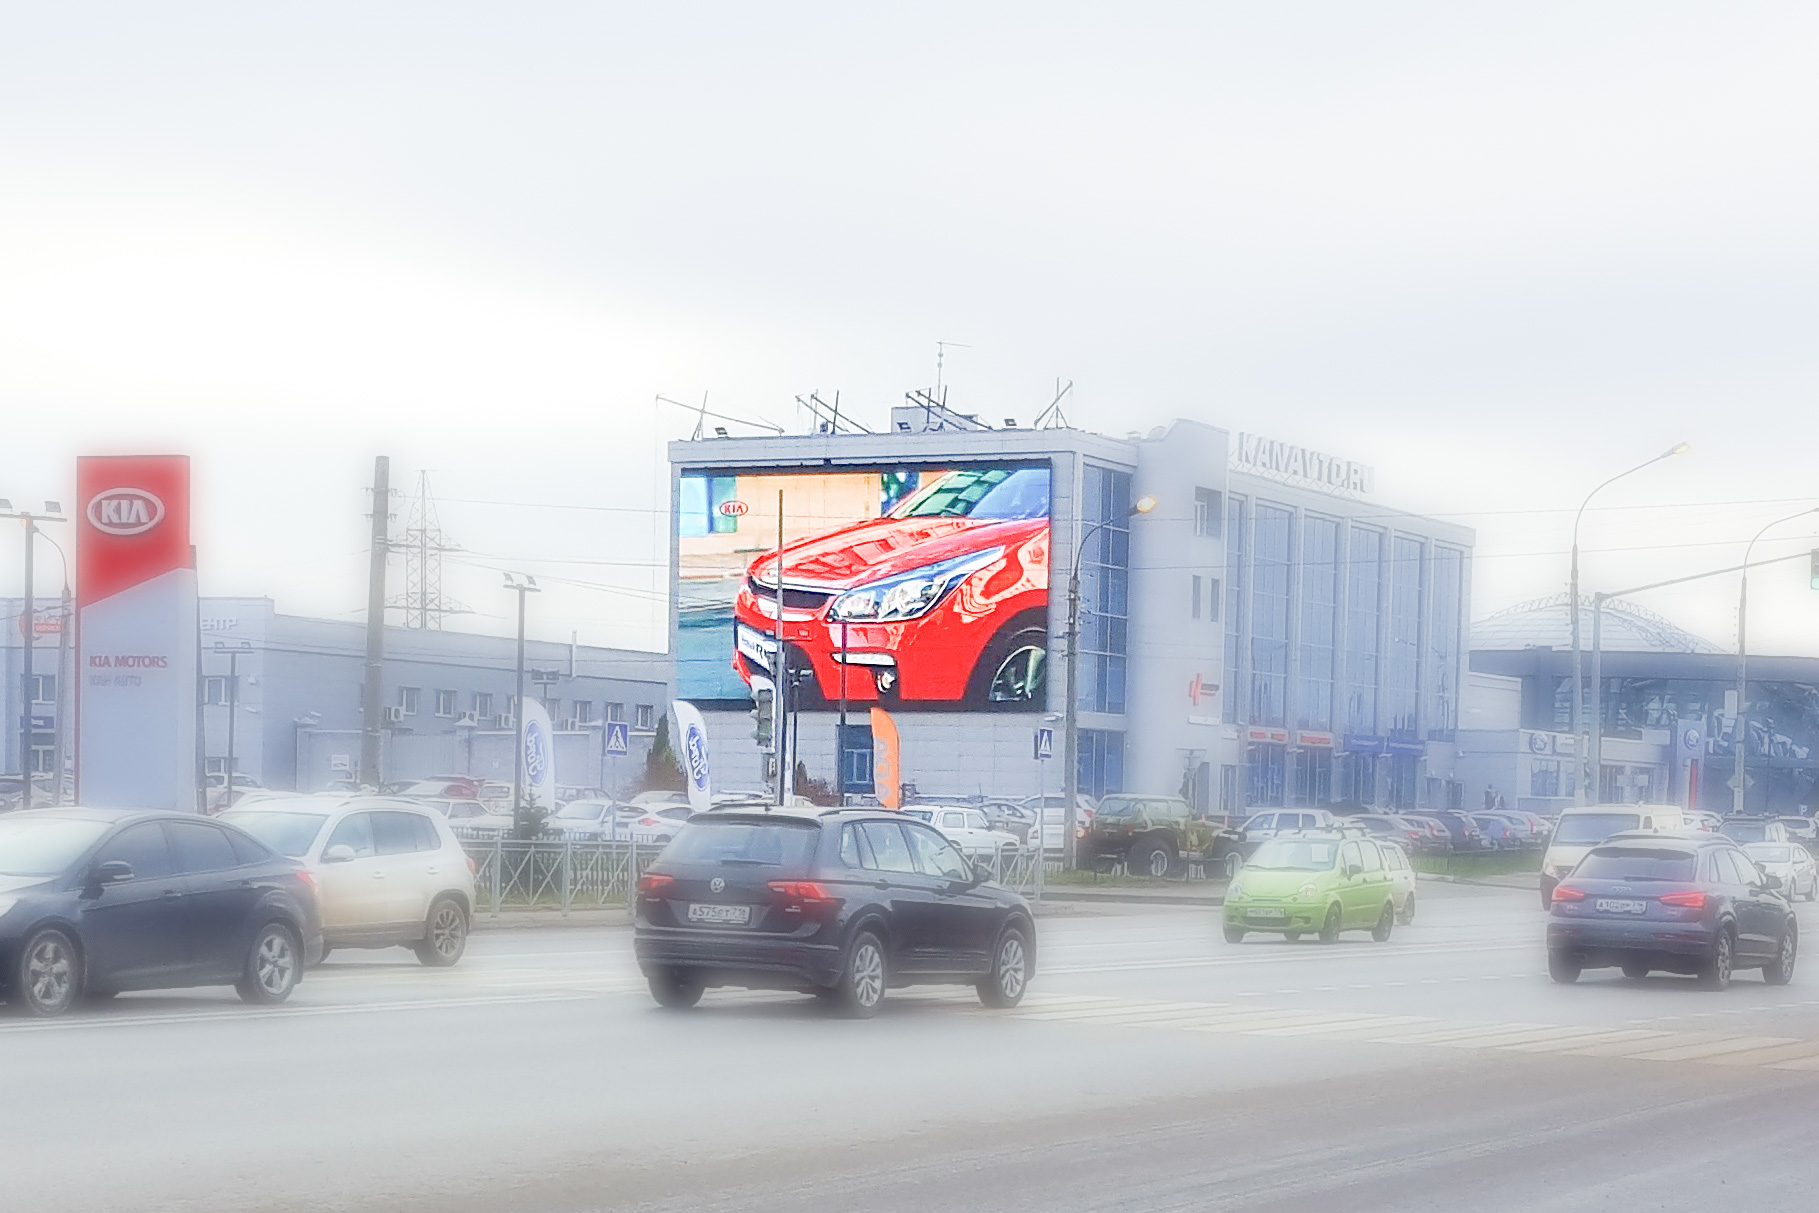 Реклама на здании Кан авто, сибирский тракт 48